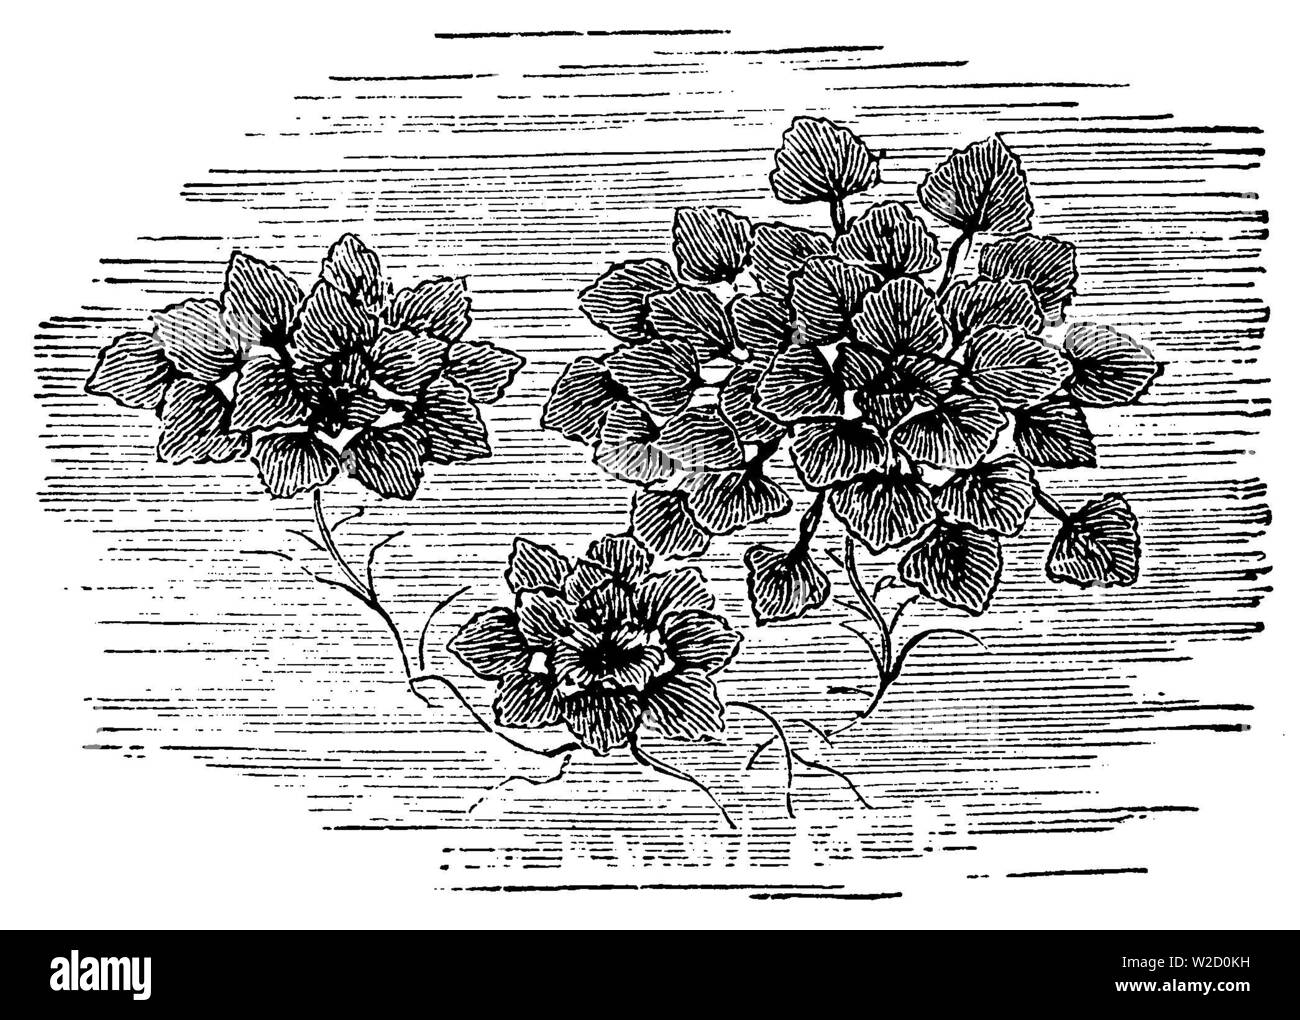 water caltrop (Trapa natans), Trapa natans, anonym (garden book, 1911) Stock Photo